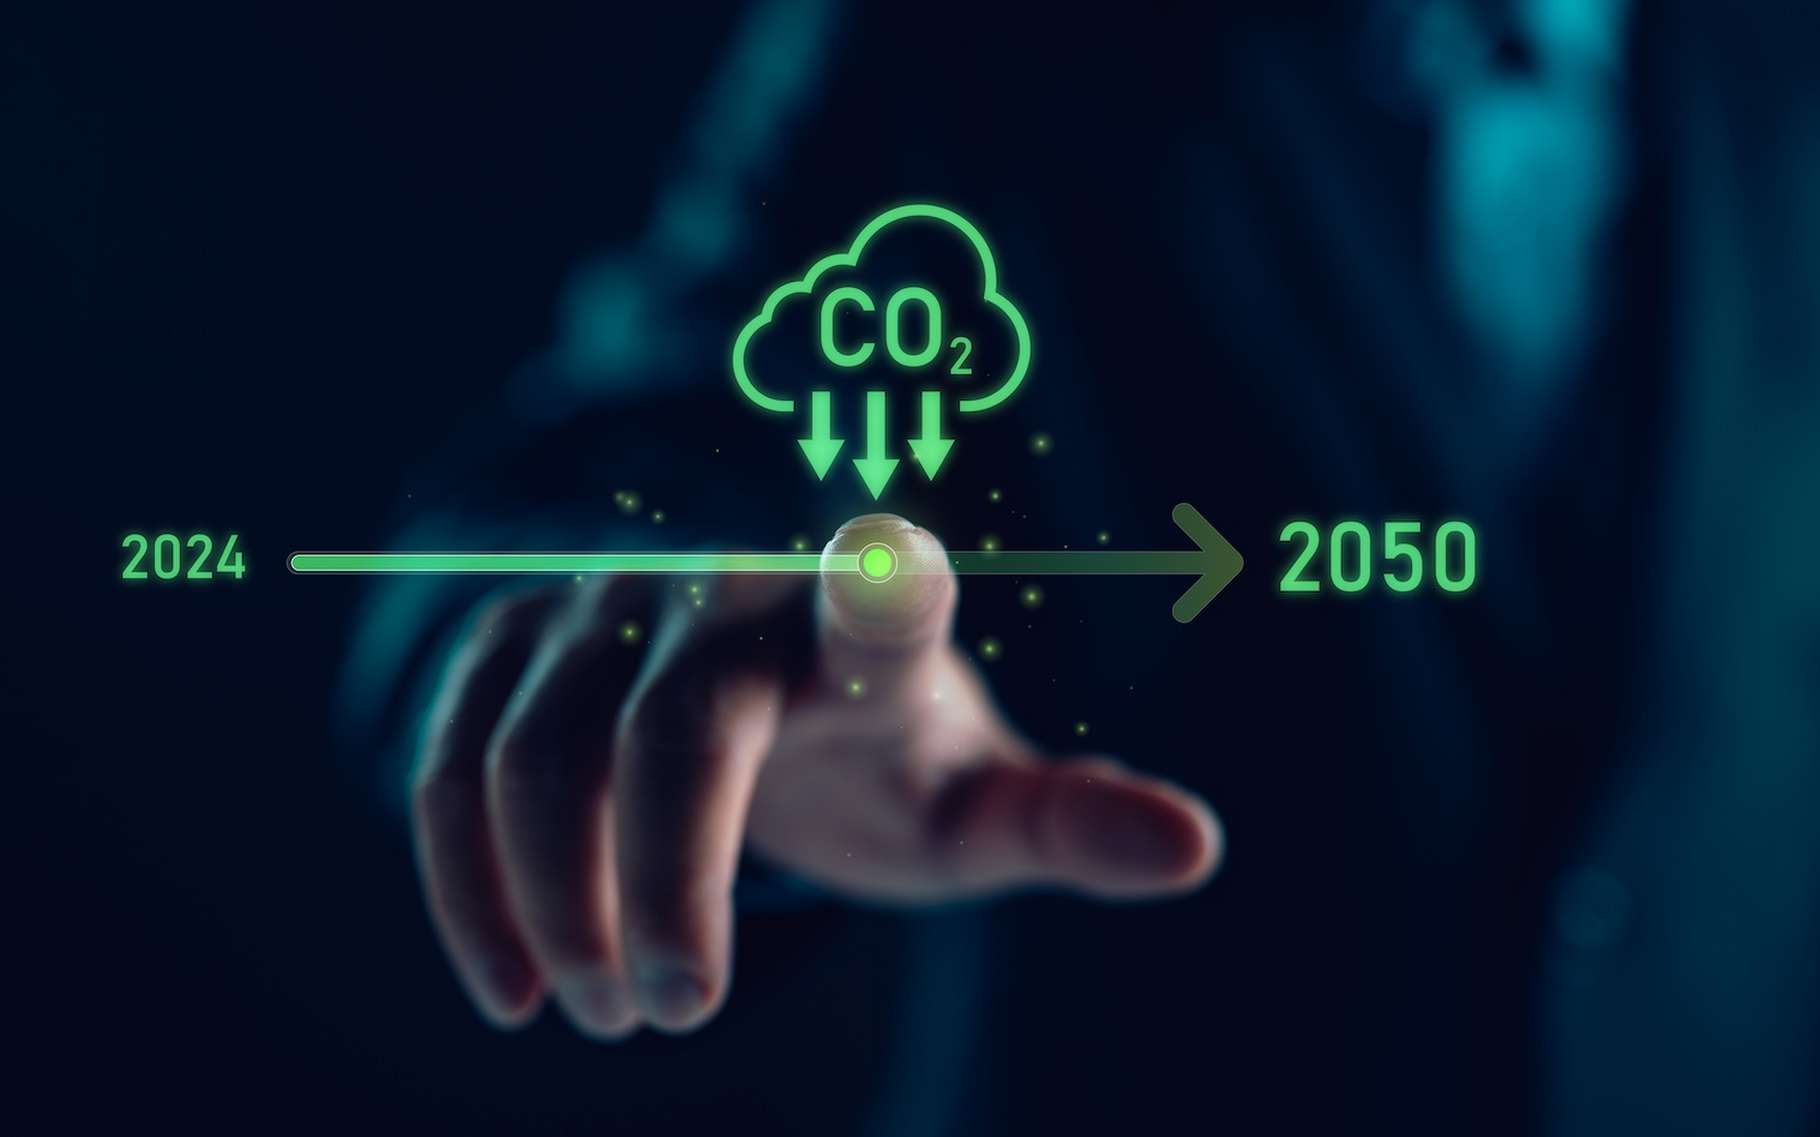 Nos émissions de gaz à effet de serre appelées à chuter dès 2040